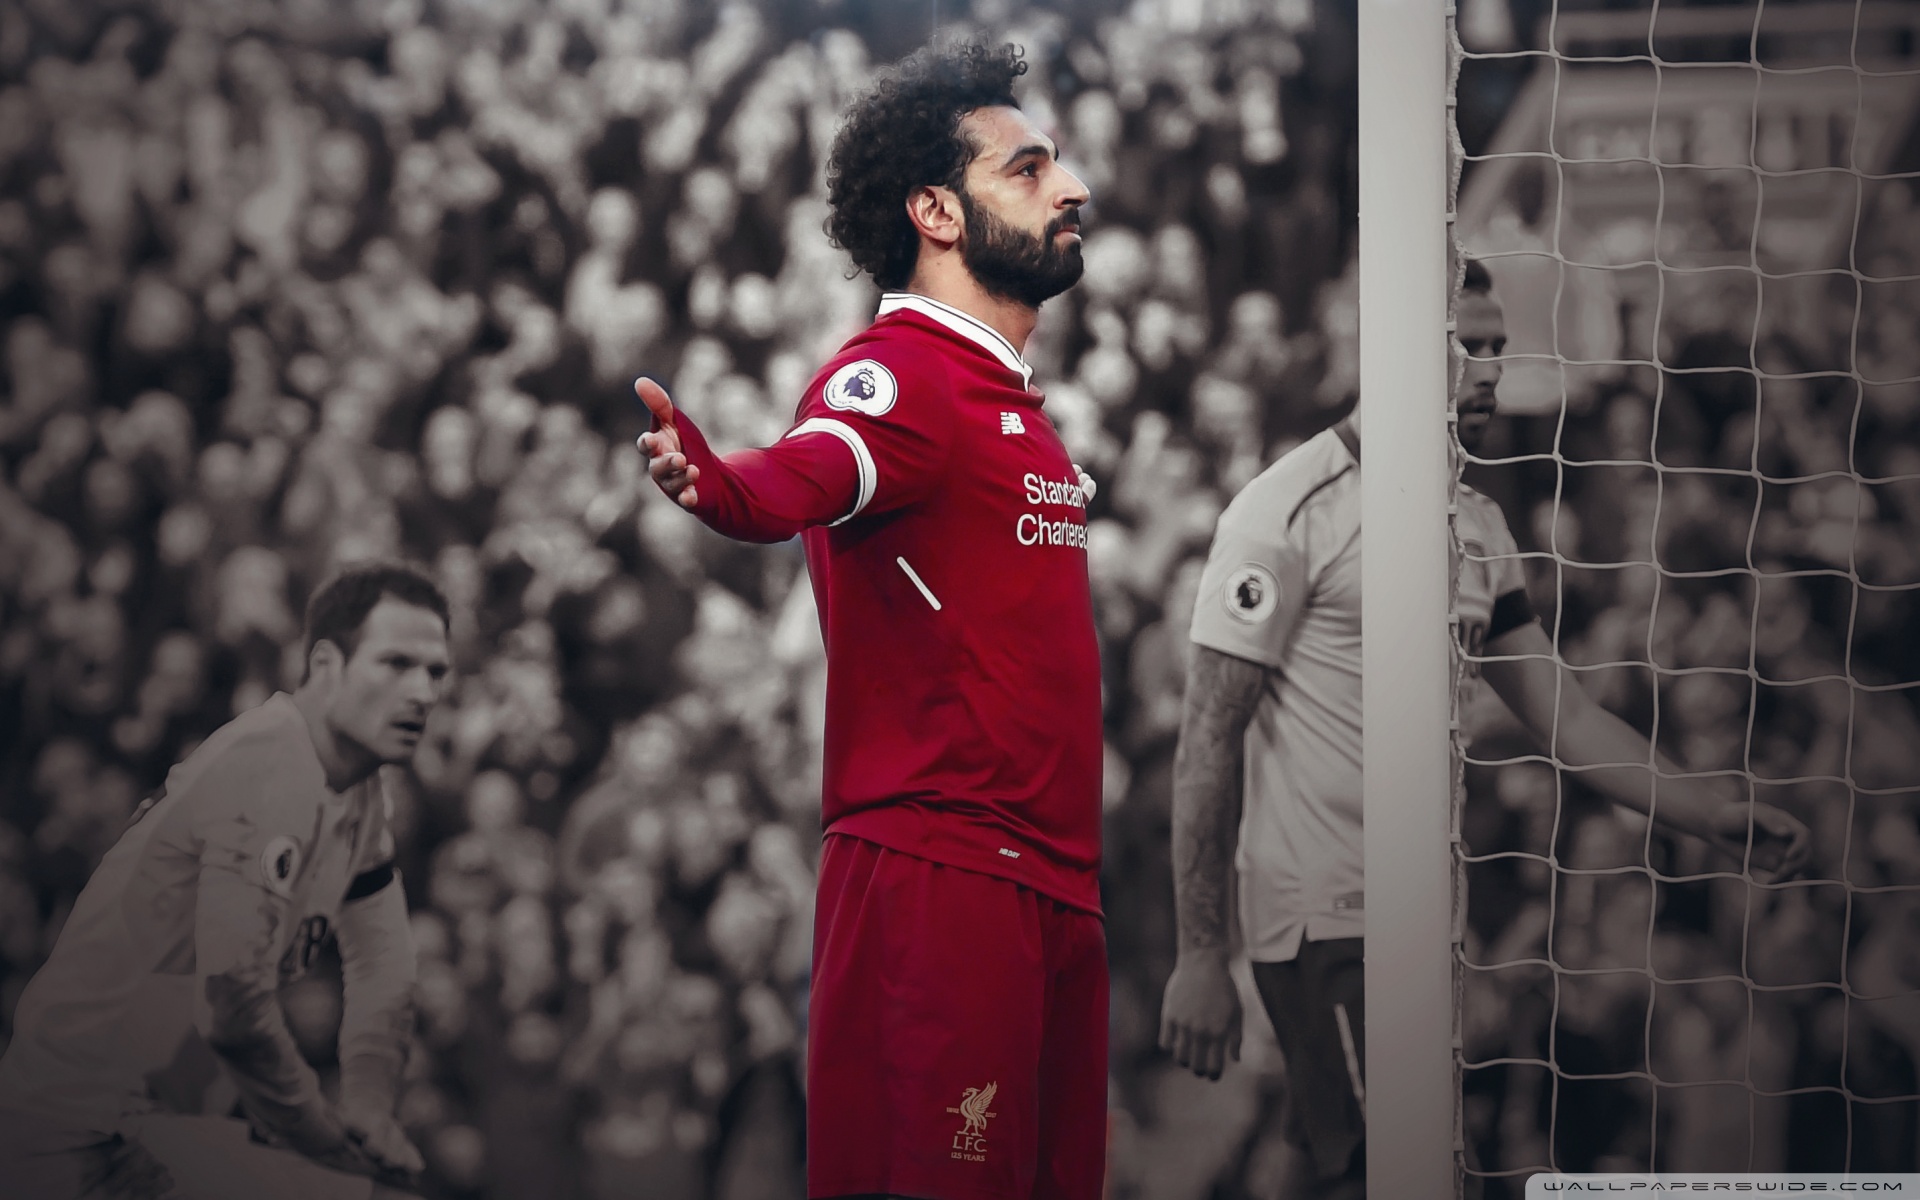 Mohamed Salah Liverpool 4k HD Desktop Wallpaper For Ultra